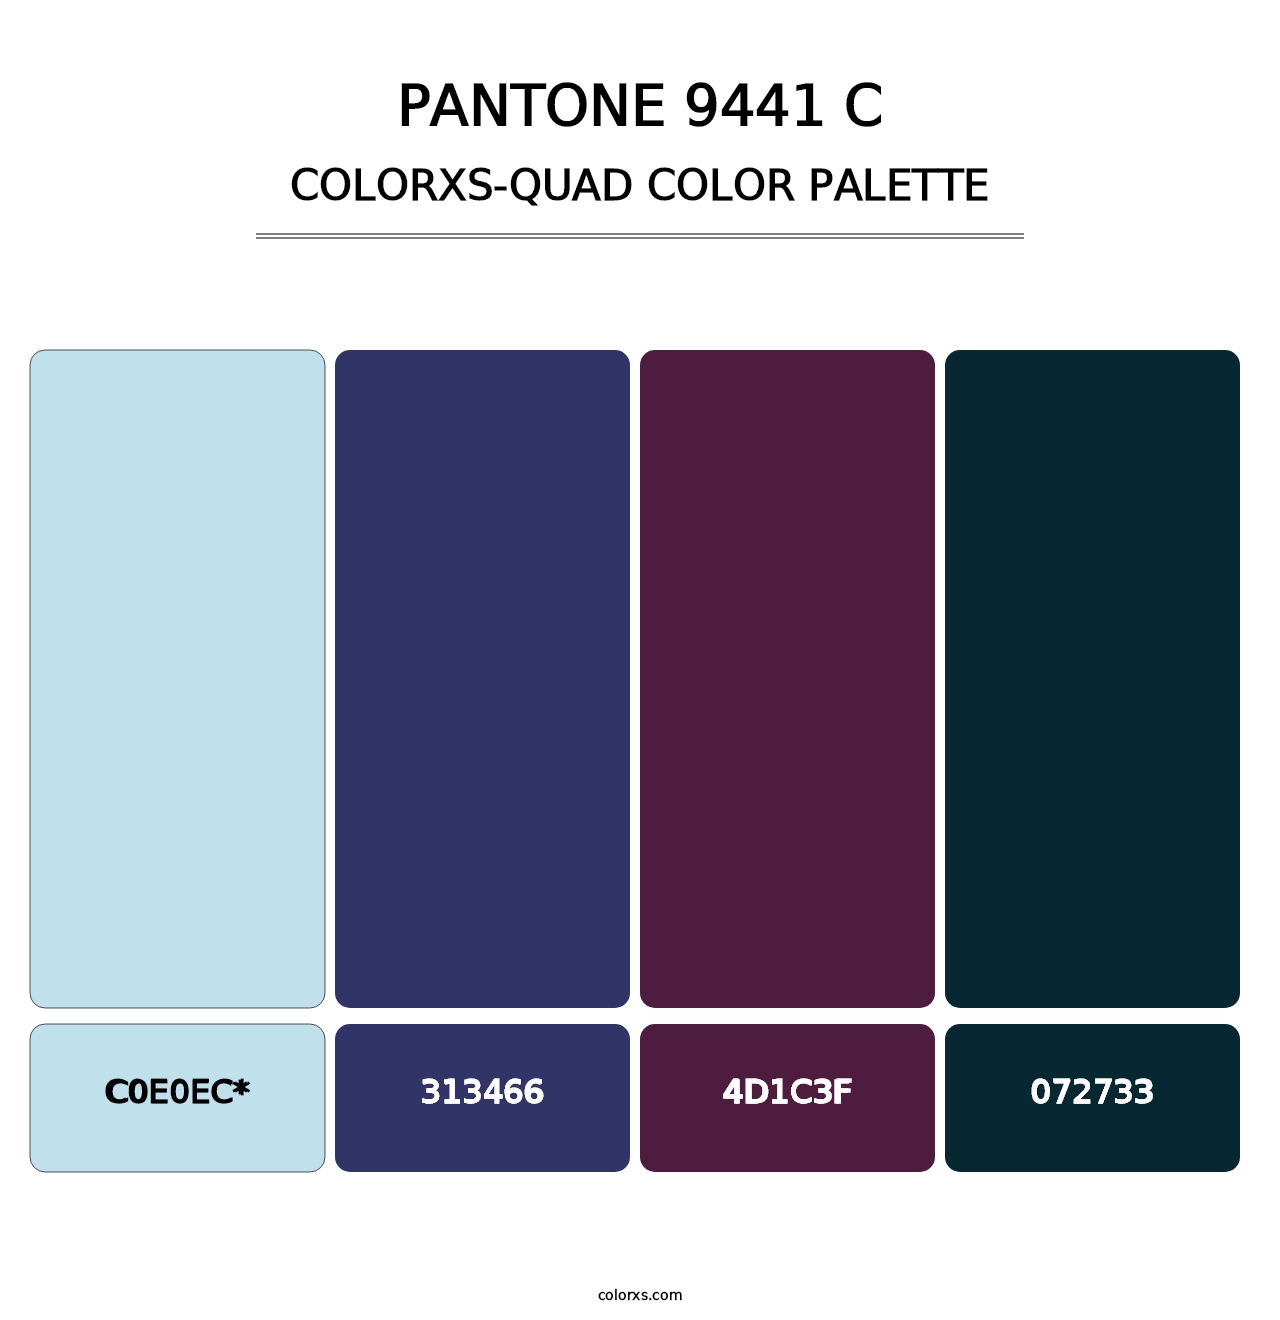 PANTONE 9441 C - Colorxs Quad Palette